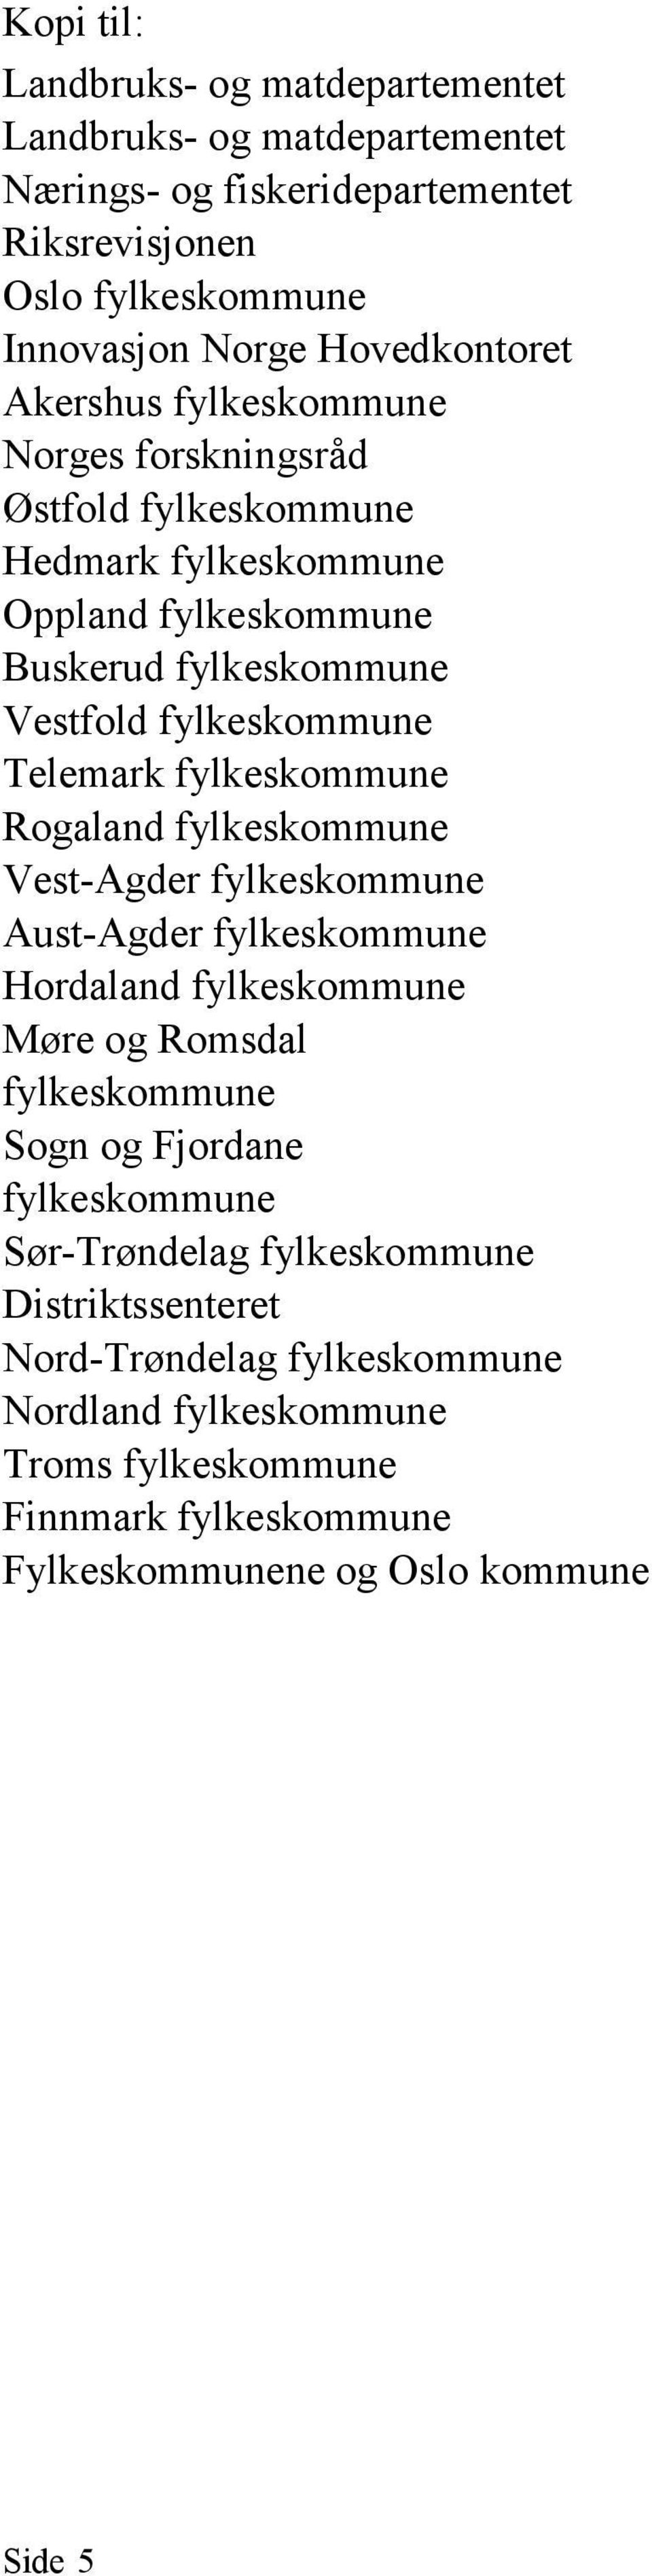 fylkeskommune Rogaland fylkeskommune Vest-Agder fylkeskommune Aust-Agder fylkeskommune Hordaland fylkeskommune Møre og Romsdal fylkeskommune Sogn og Fjordane fylkeskommune